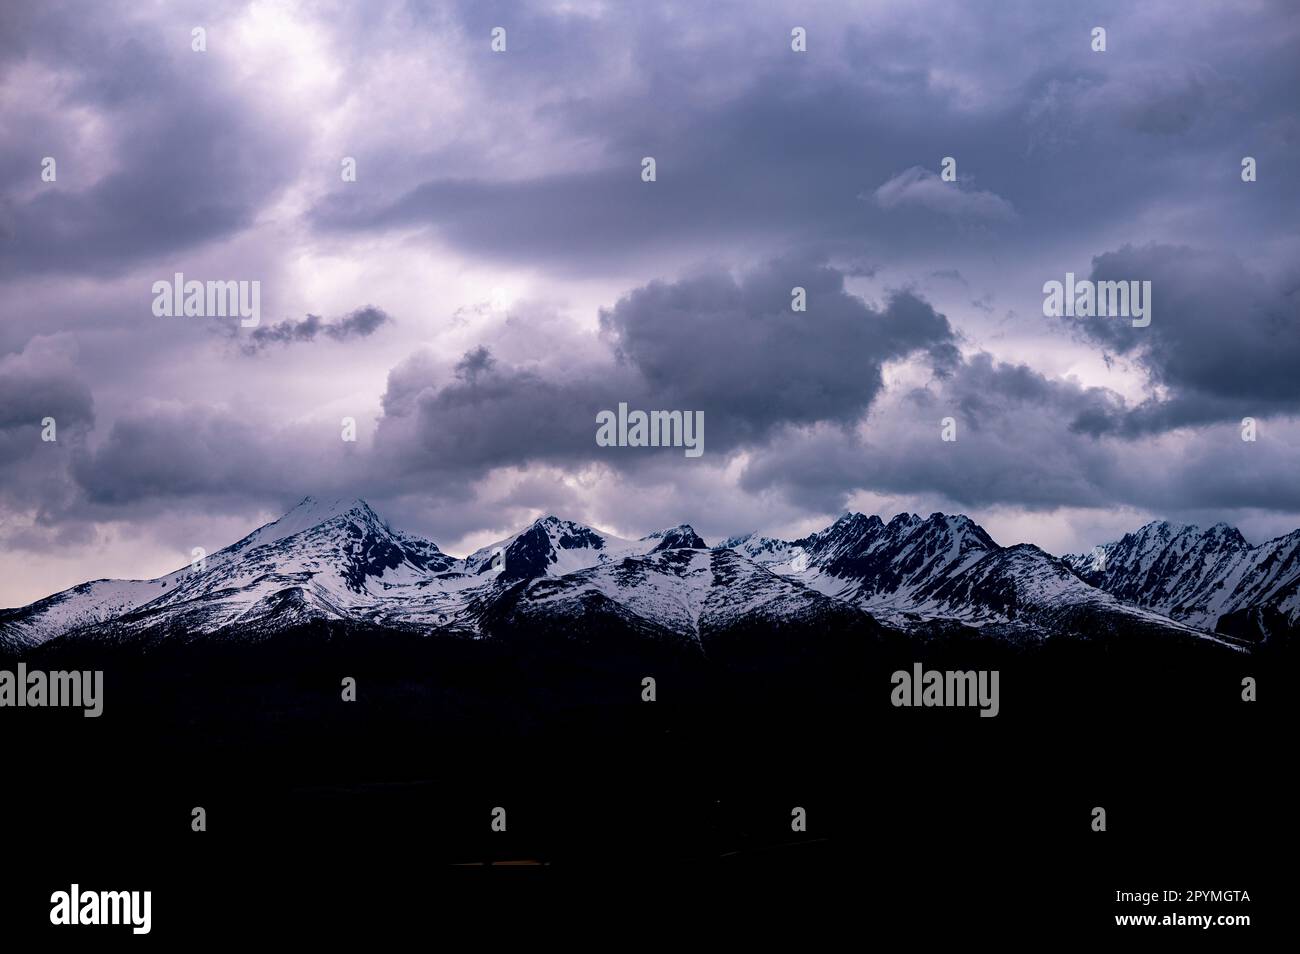 Paysage hivernal nuageux des montagnes Tatra, Slovaquie. Krivan, Solisko et Satan. Banque D'Images